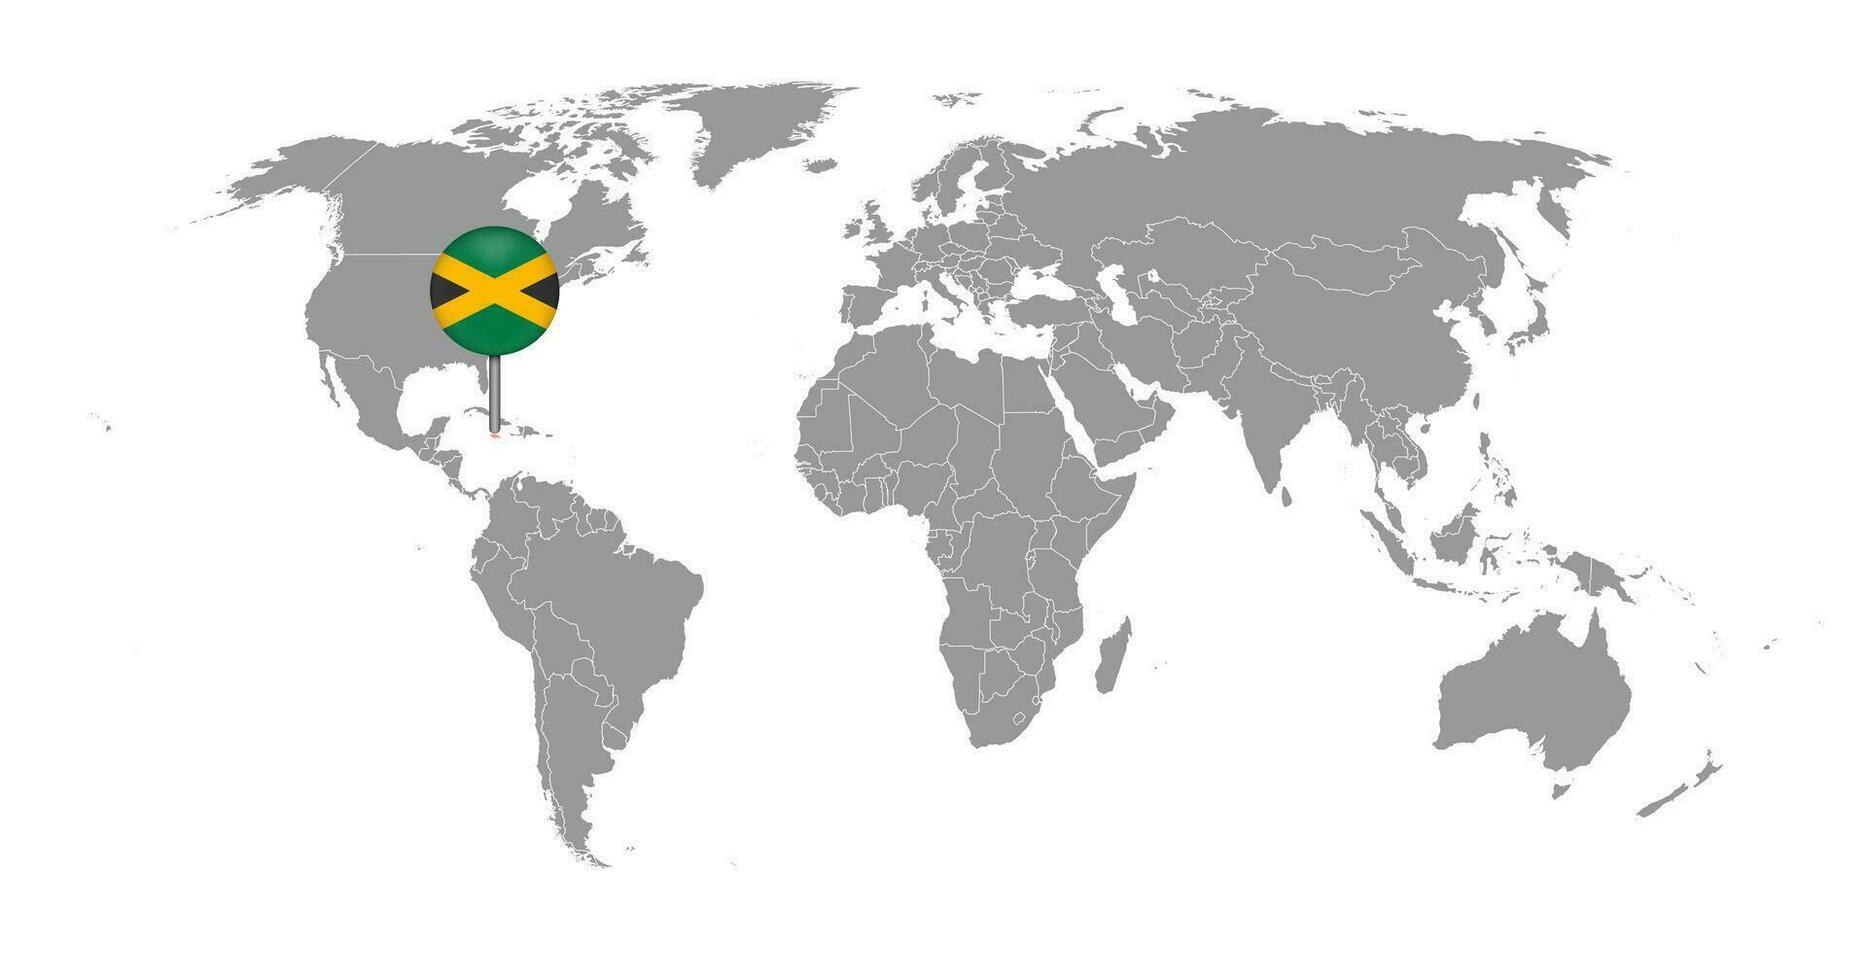 épinglez la carte avec le drapeau de la jamaïque sur la carte du monde. illustration vectorielle. vecteur